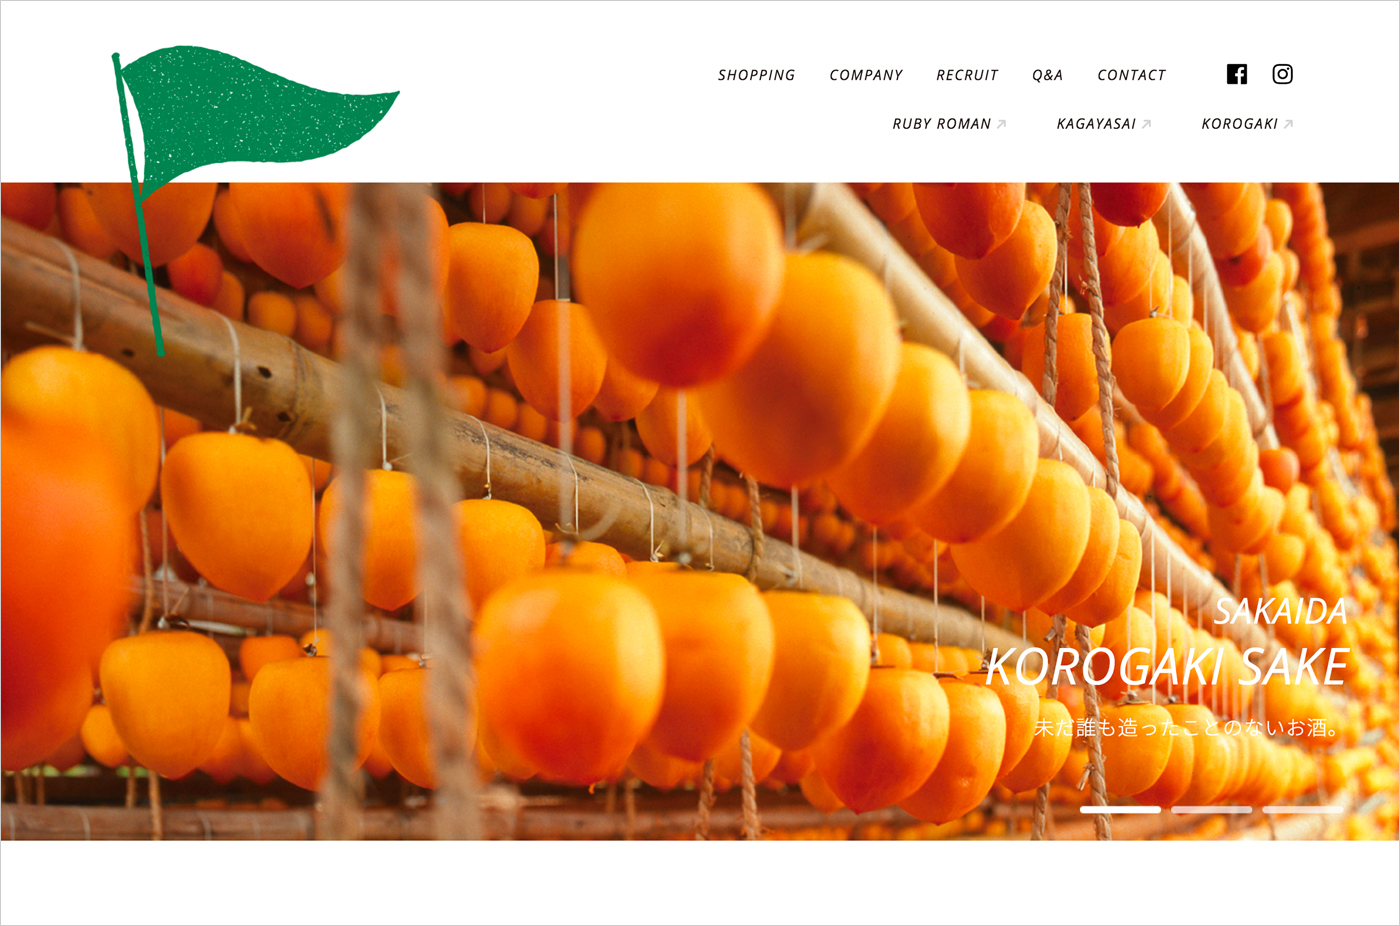 加賀野菜,ブランドの野菜・果物の通販お取り寄せ|サカイダフルーツウェブサイトの画面キャプチャ画像